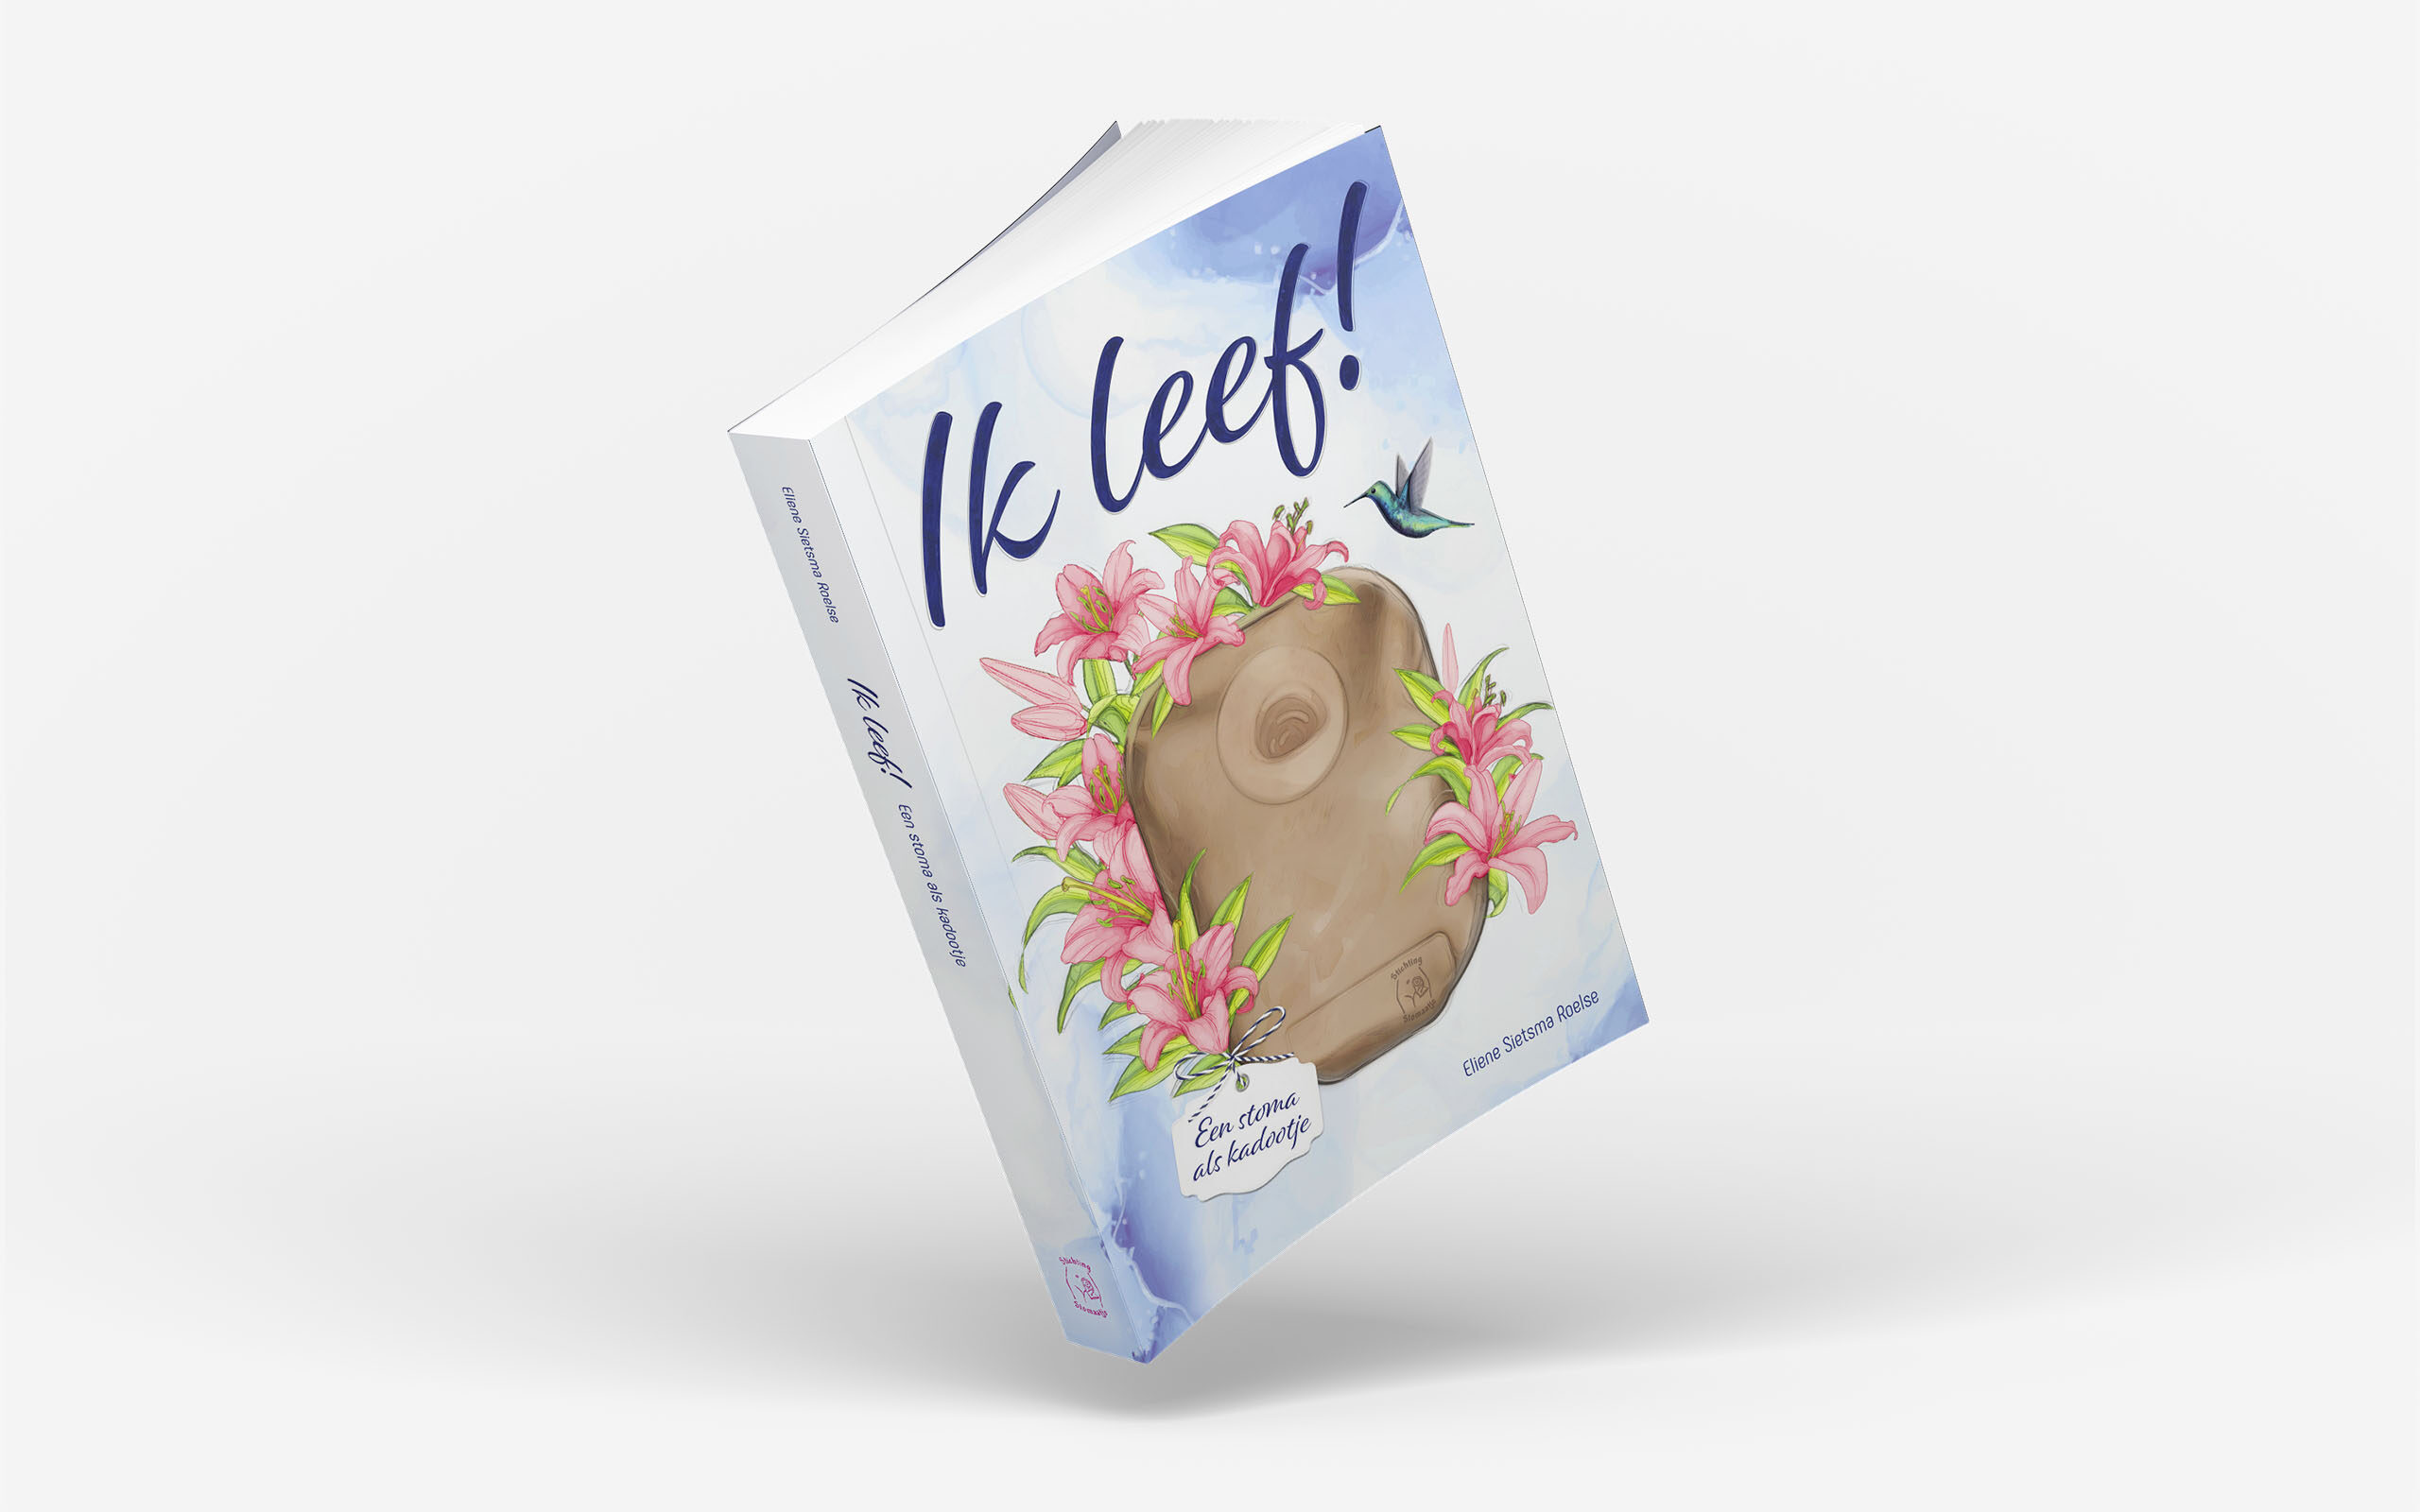 Ontwerp boekomslag – ‘Ik Leef’ van Eliene Sietsma Roelse